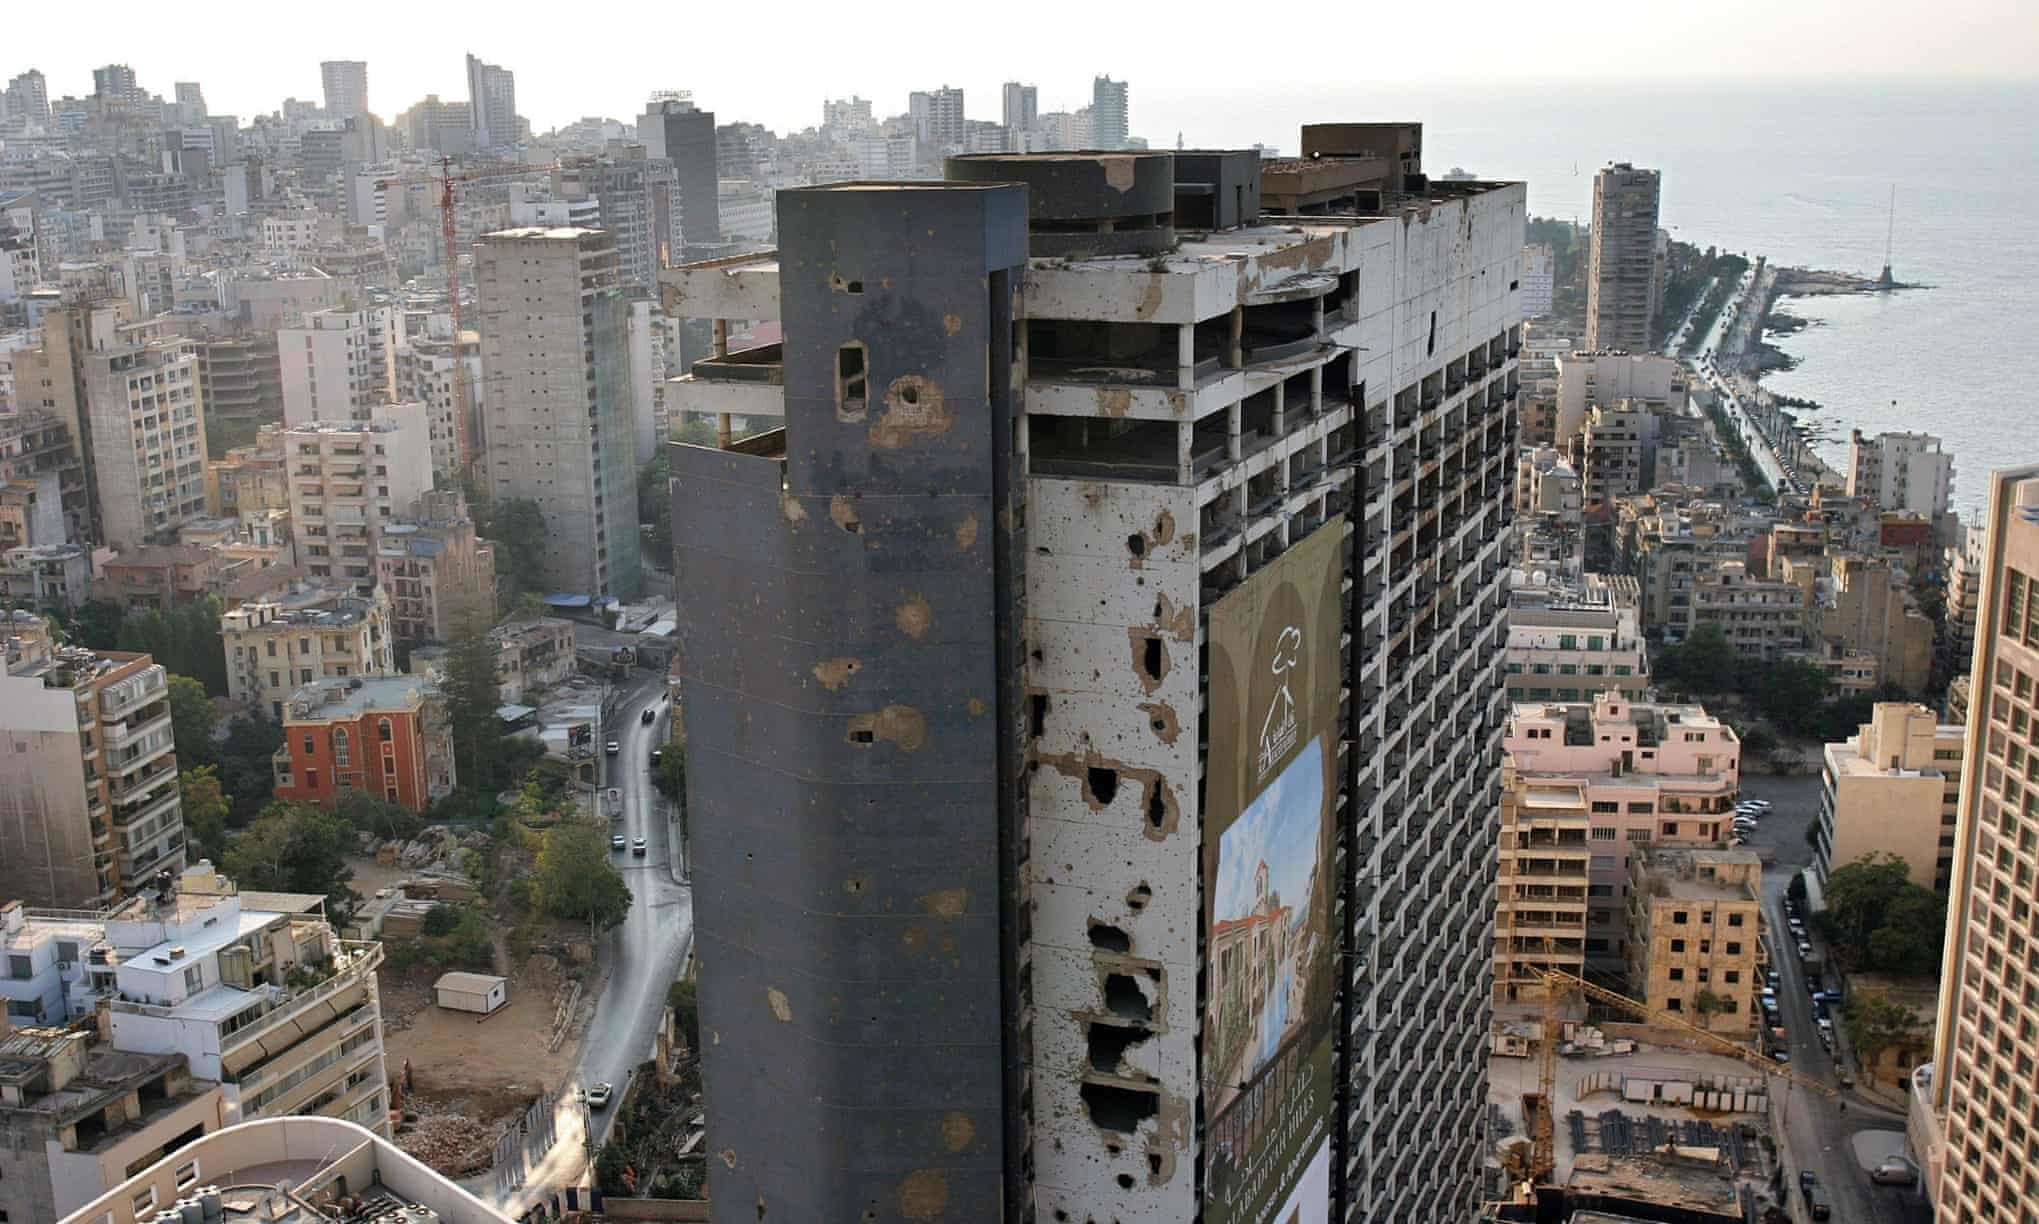 Yaklaşık 15 yıl süren iç savaş süresince Beyrut'un Mina'l-Husn oteller bölgesi, en yoğun çatışmalara ev sahipliği yaptı. Bunlardan İngiliz menşeili bir otel şirketi olan Holiday Inn'in 26 katlı Beyrut binası, üzerinde taşıdığı sahne olduğu çatışmalar ve geride kalan savaş izleriyle Lübnan İç Savaşı'nın sembolü haline geldi.